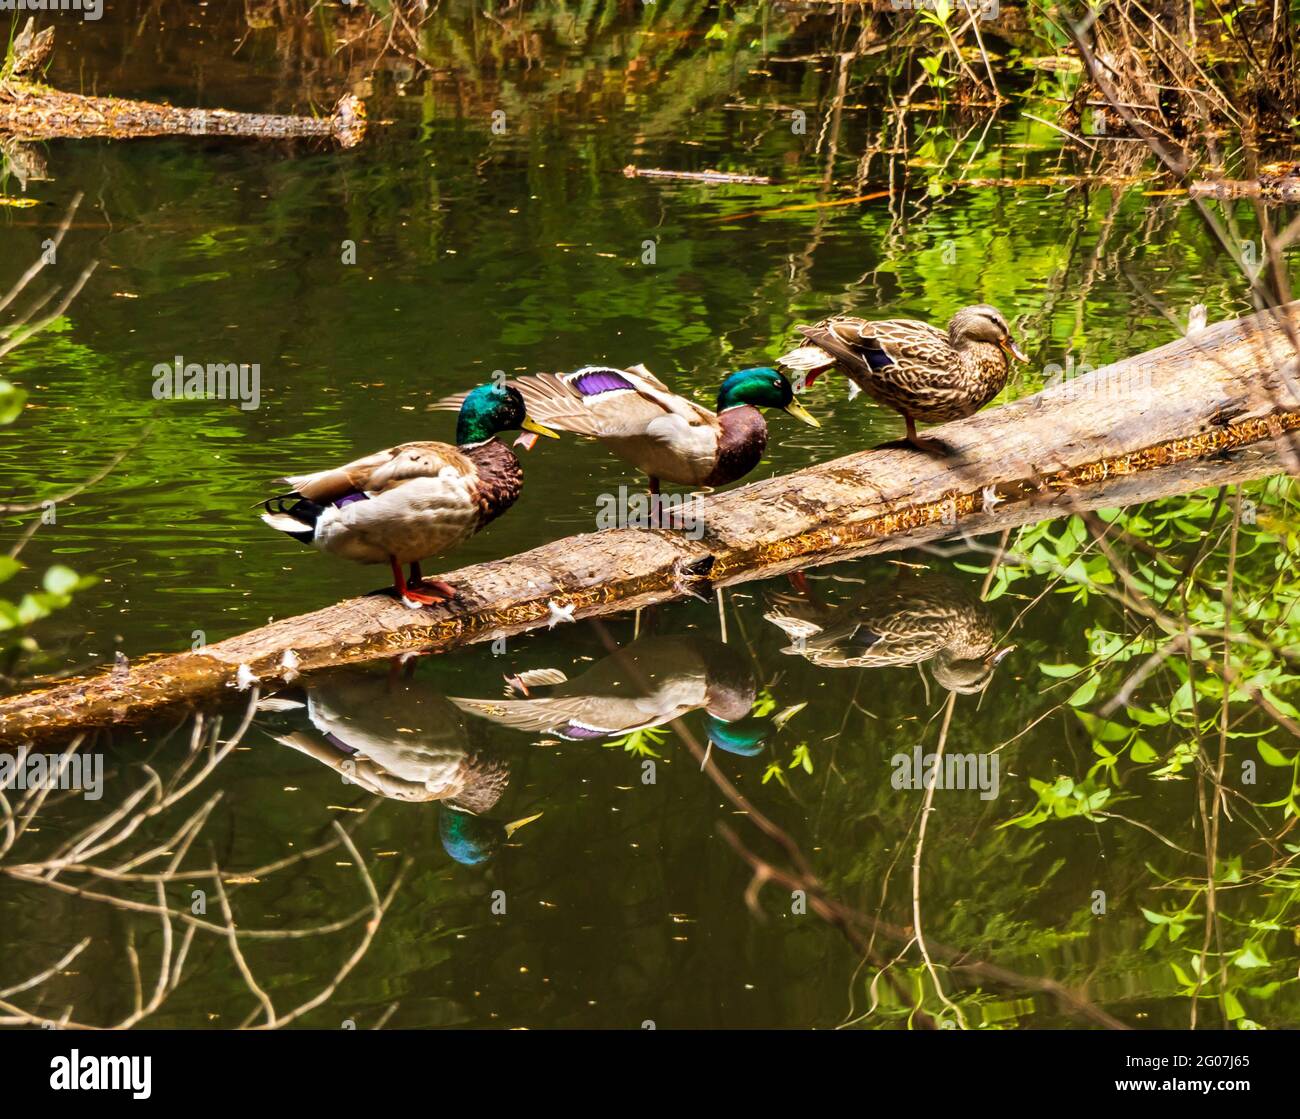 Mallard Ducks, zwei Männchen, ein Weibchen, sitzen auf einem Baumstamm im Feuchtgebiet. Bunt gefärbte Köpfe auf Männchen. Für Kalender geeignet. Stockfoto